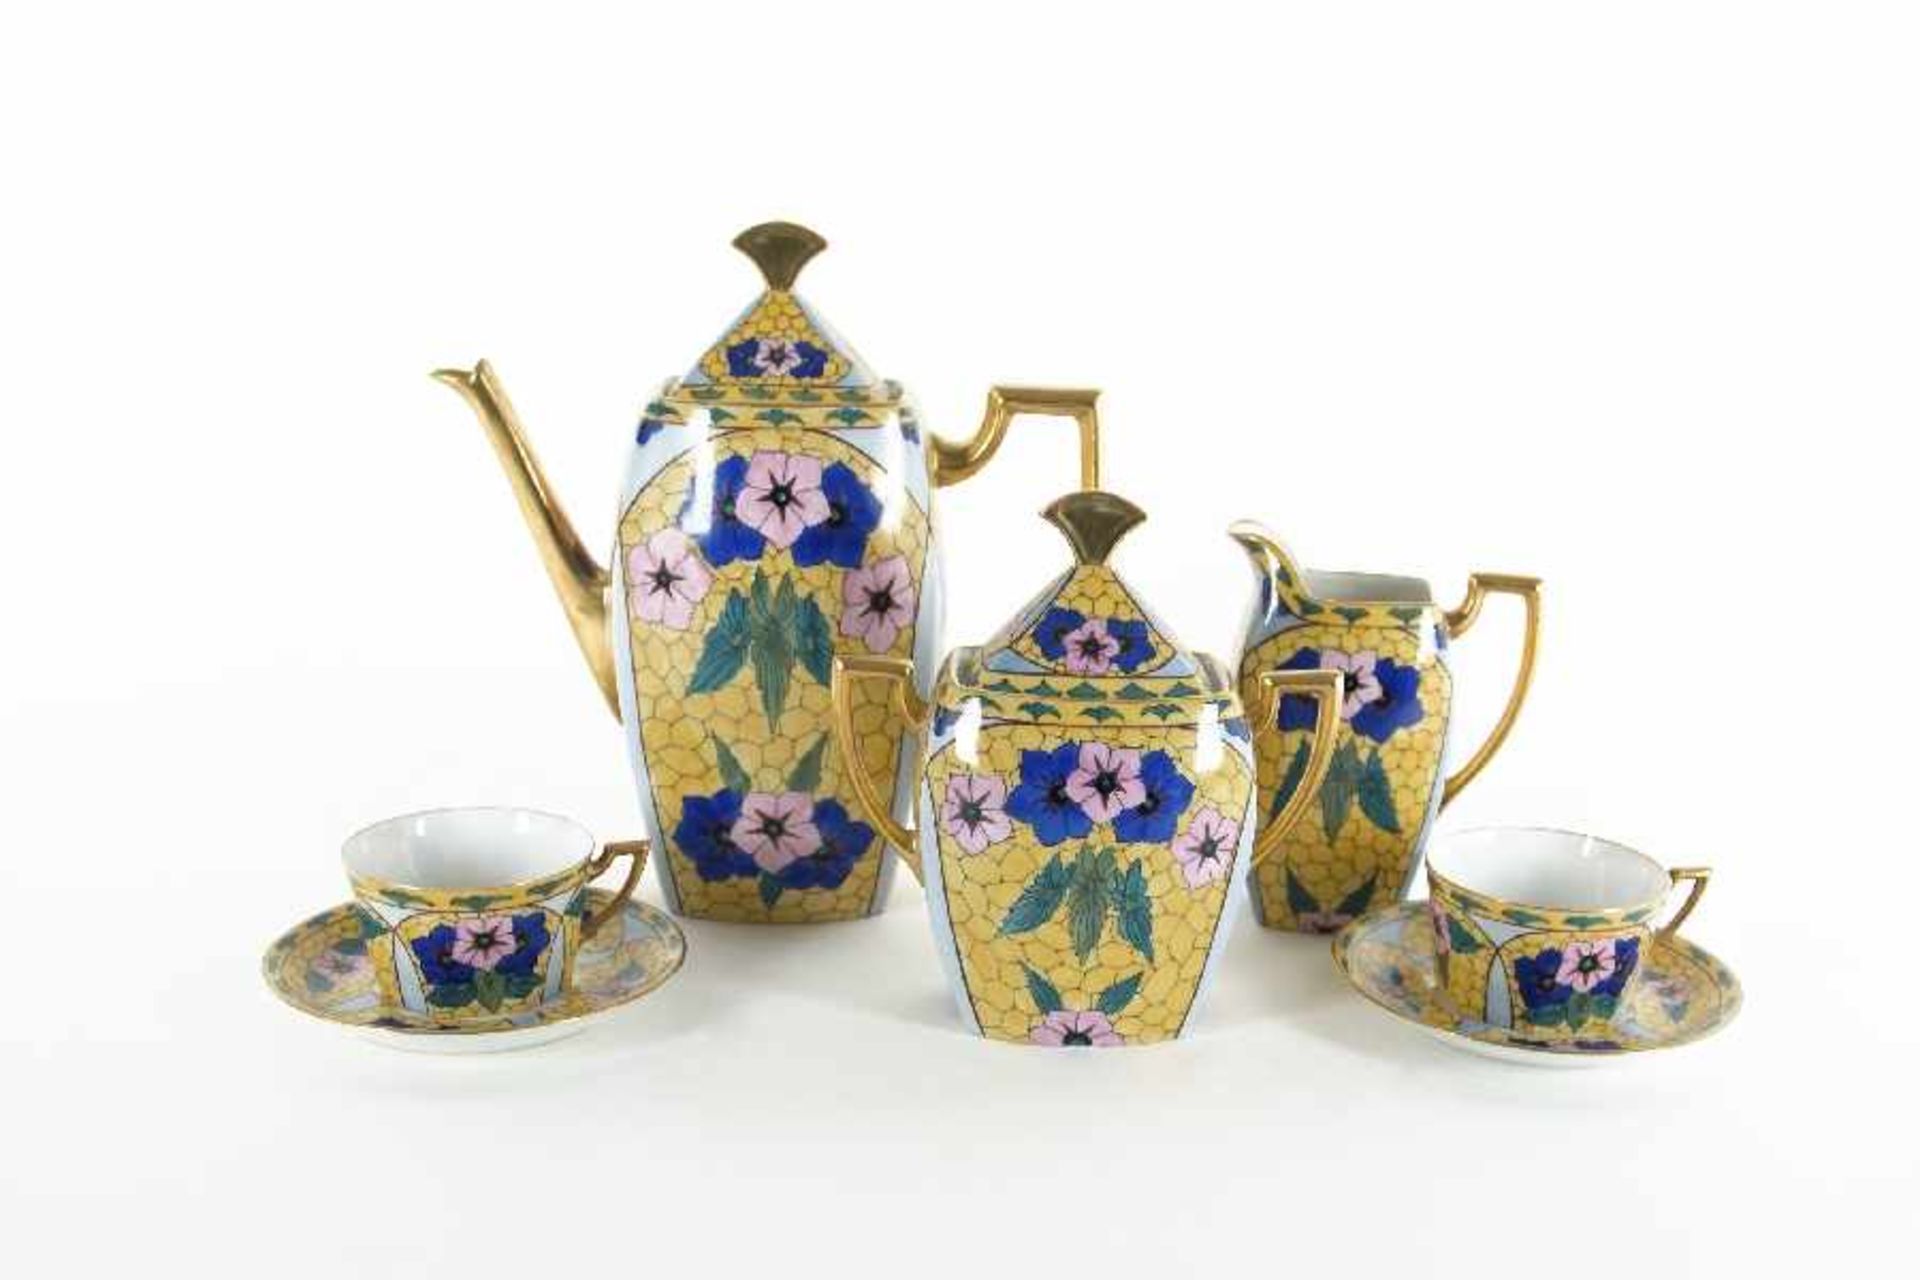 LimogesKaffeekernCoffee setPorcelain, painted: coffee pot, sugar bowl, creamer, 2 cups with saucers;